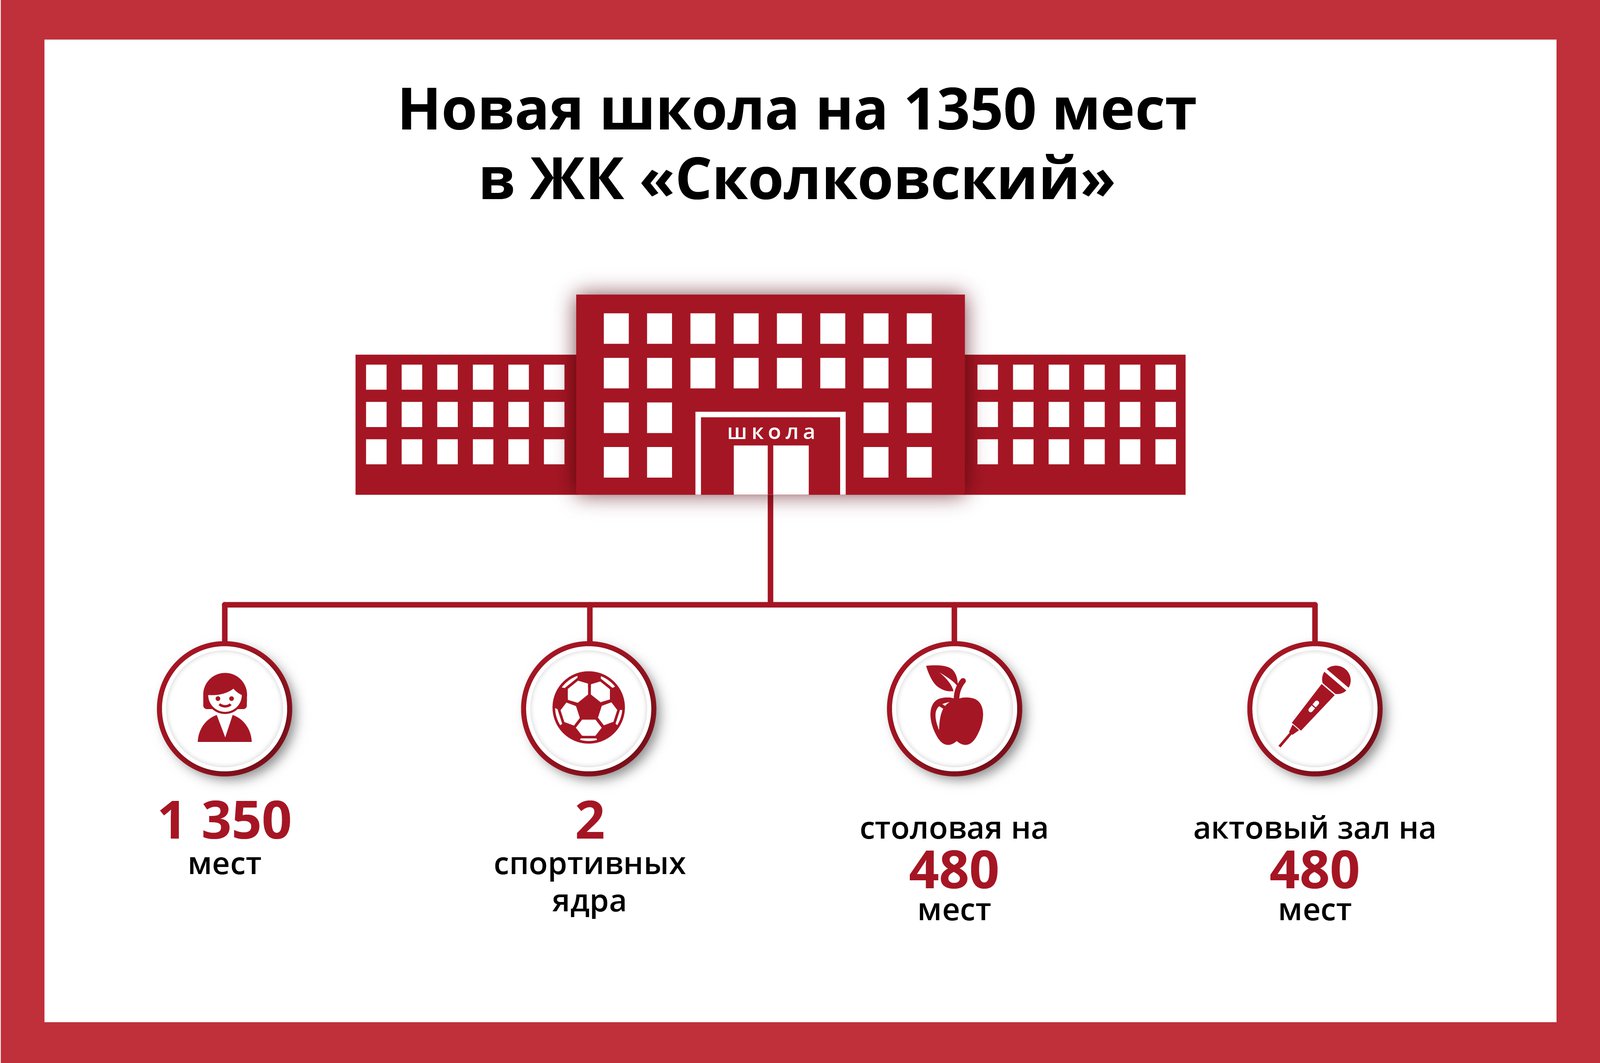 Андрей Воробьев губернатор московской области - Без второй смены: сколько еще школ построят в Одинцове?